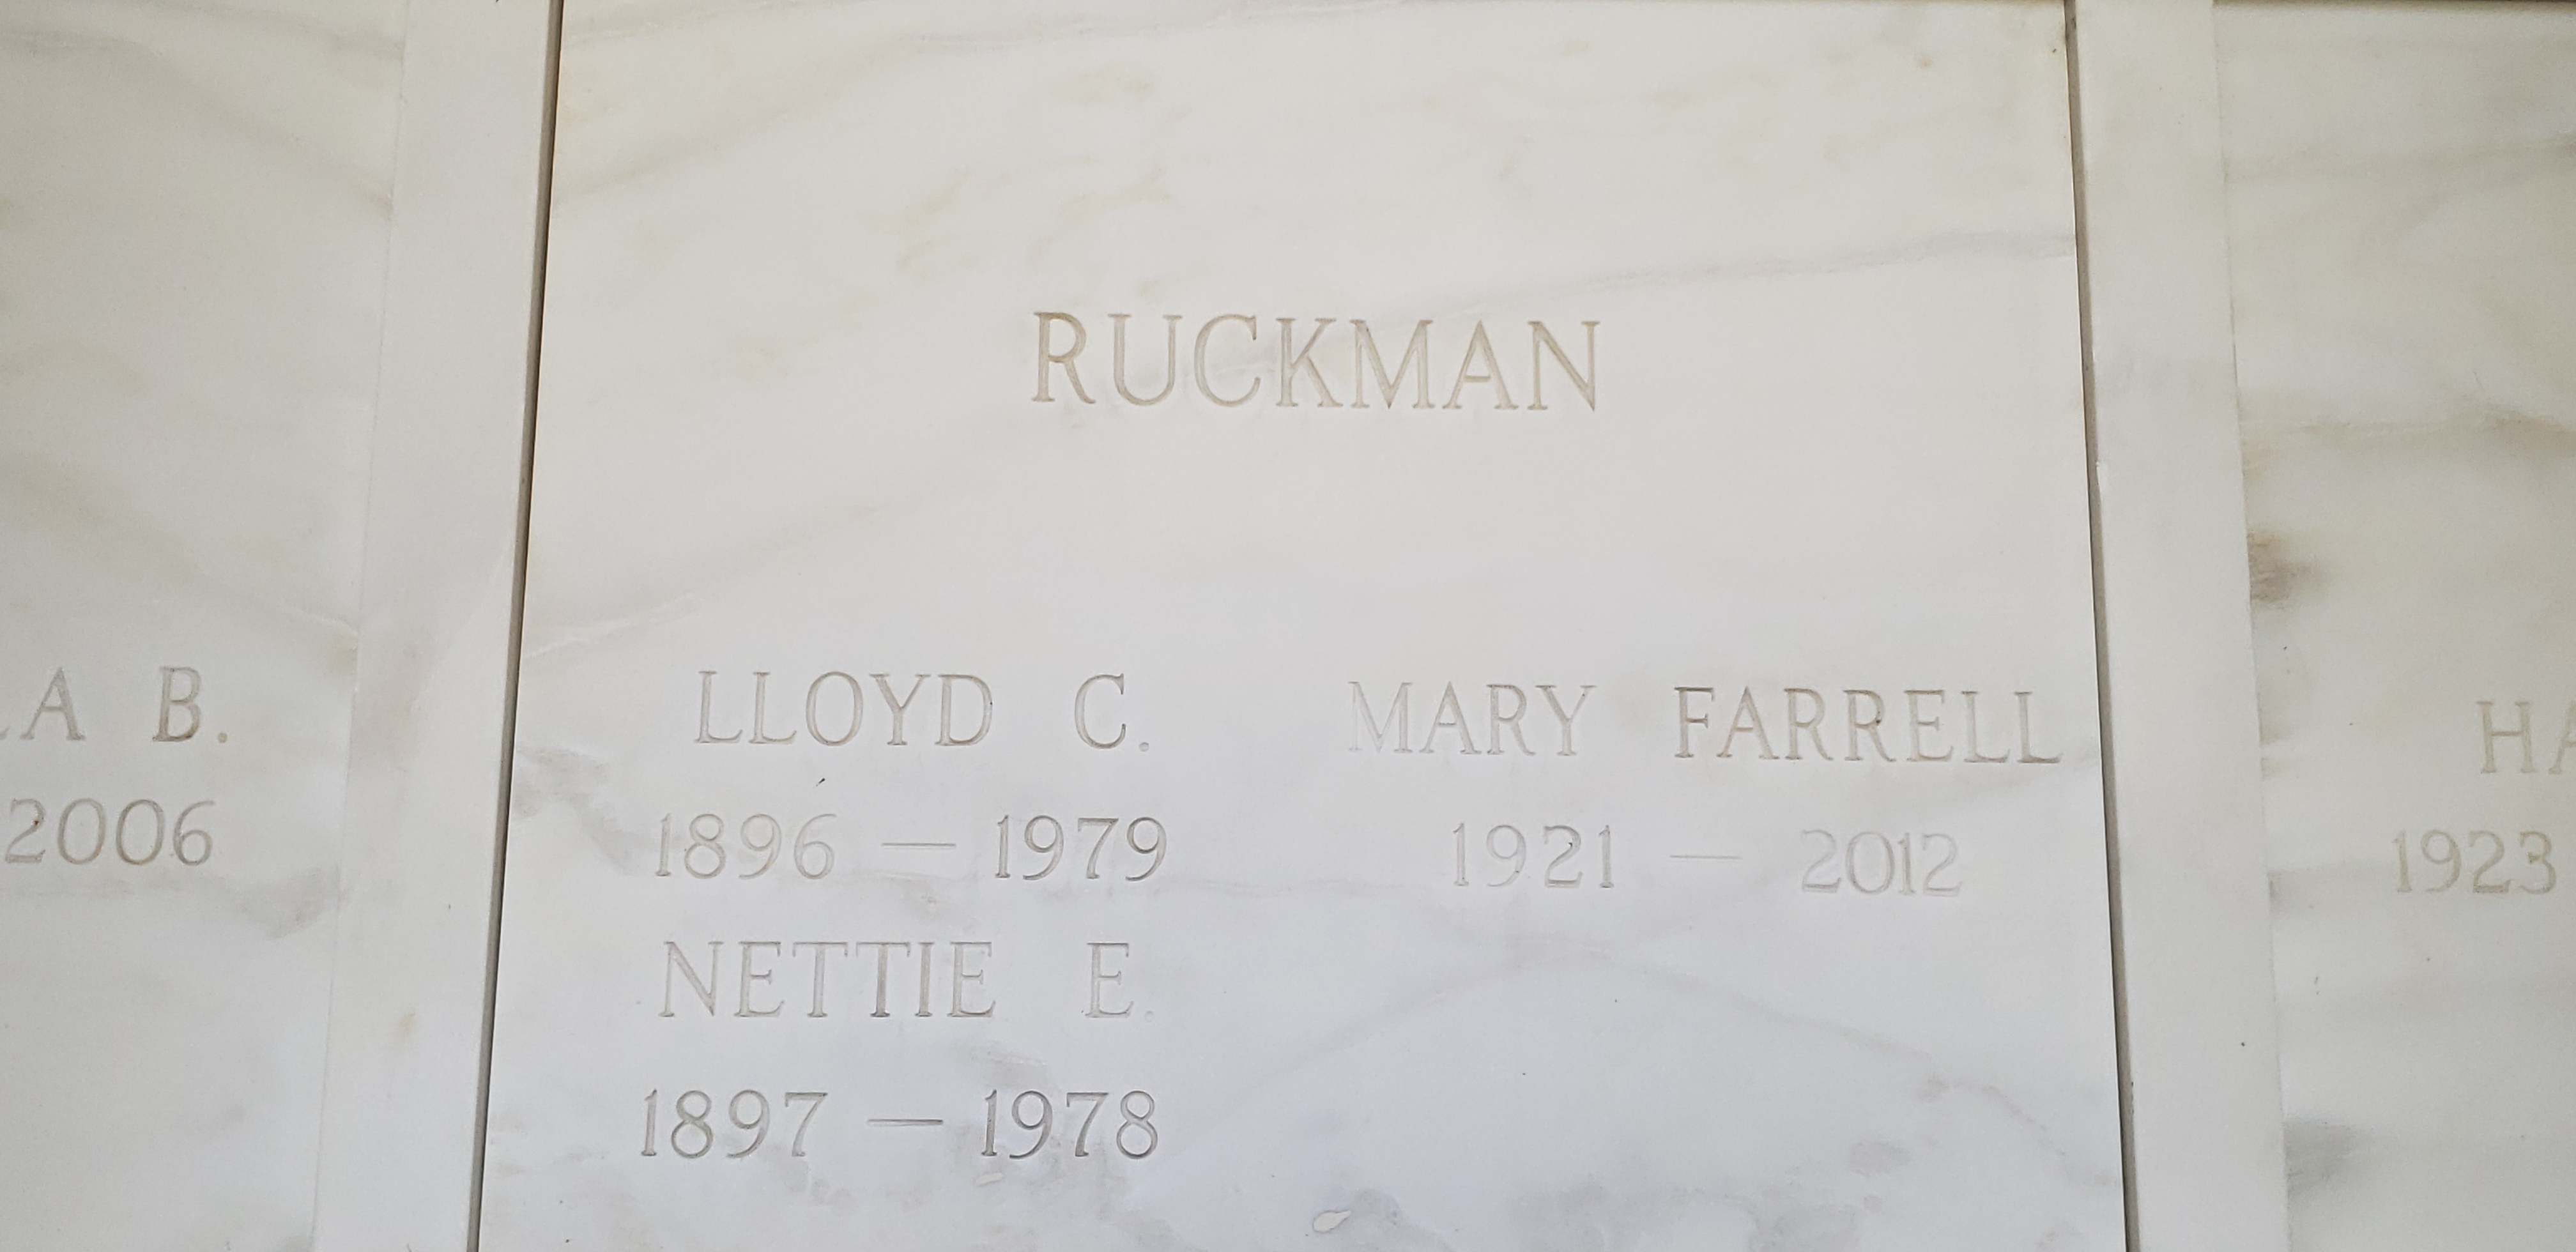 Mary Farrell Ruckman